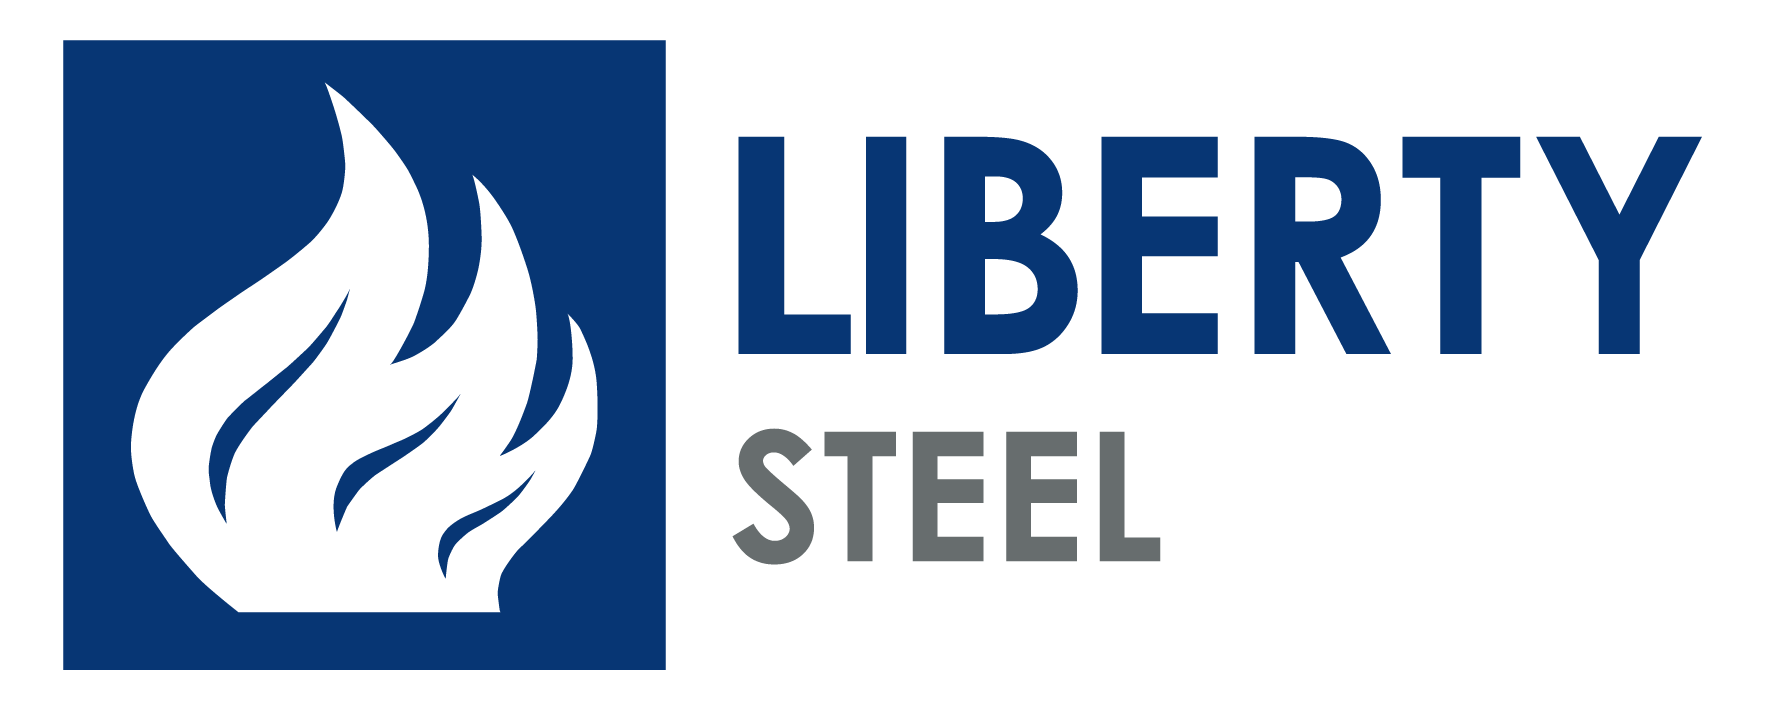 Round Steel Logo - Round Steel Bar - Sizes and Grades